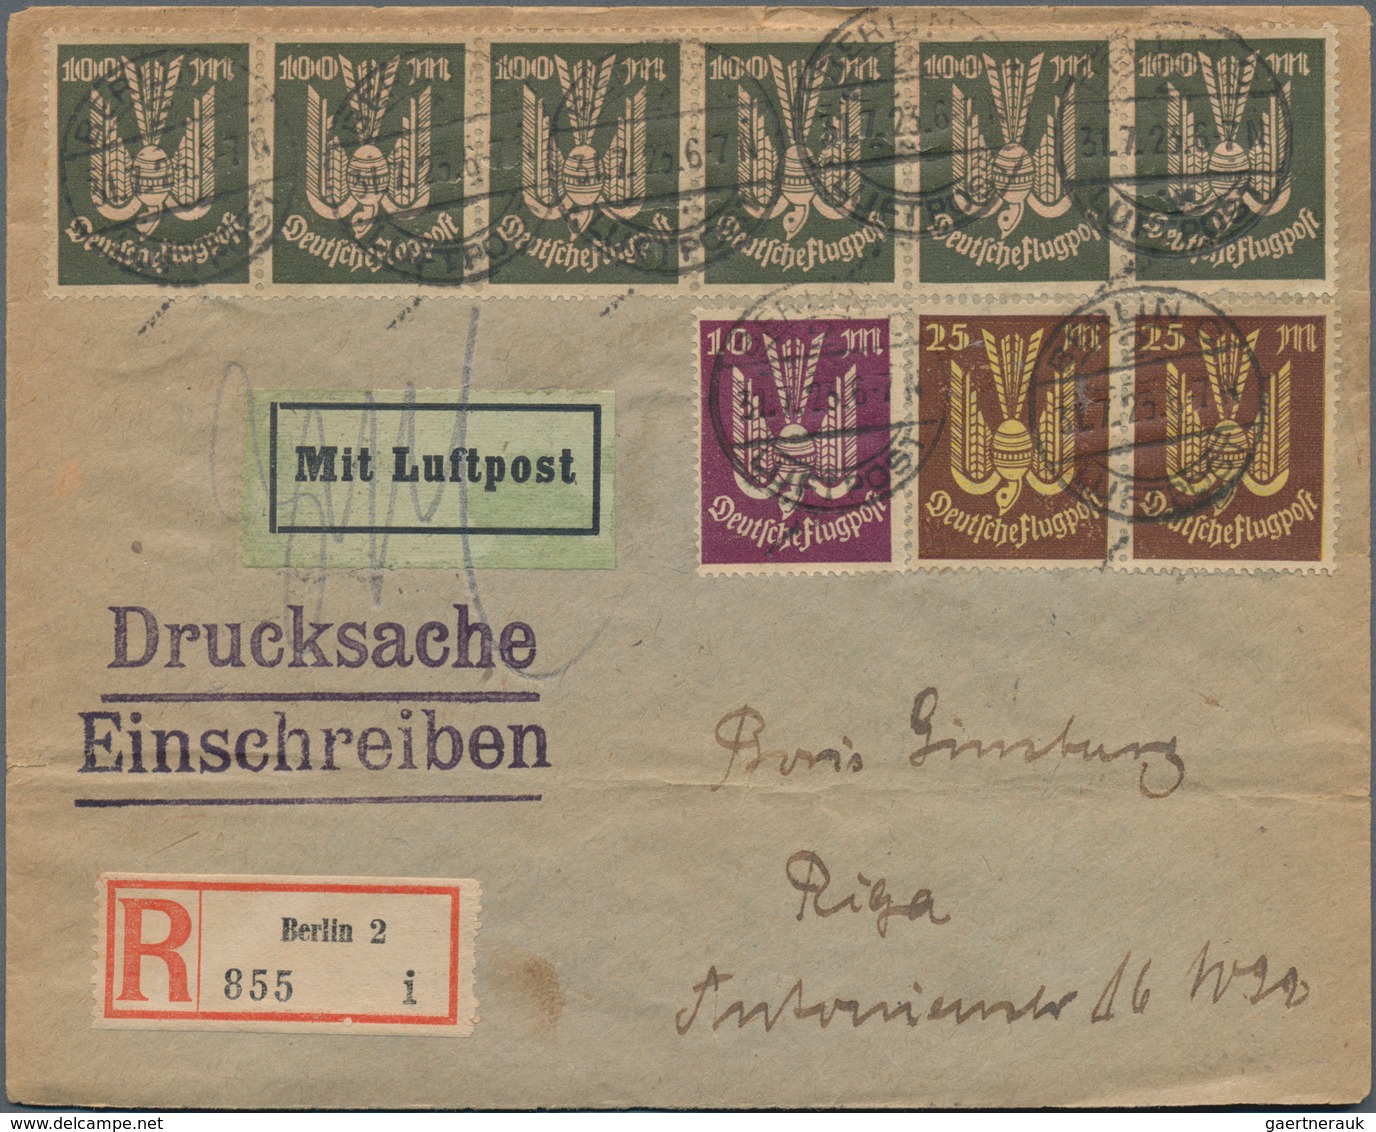 Deutsches Reich: 1874/1944, reichhaltiger Bestand von einigen hundert Briefen und Karten Kaiserreich